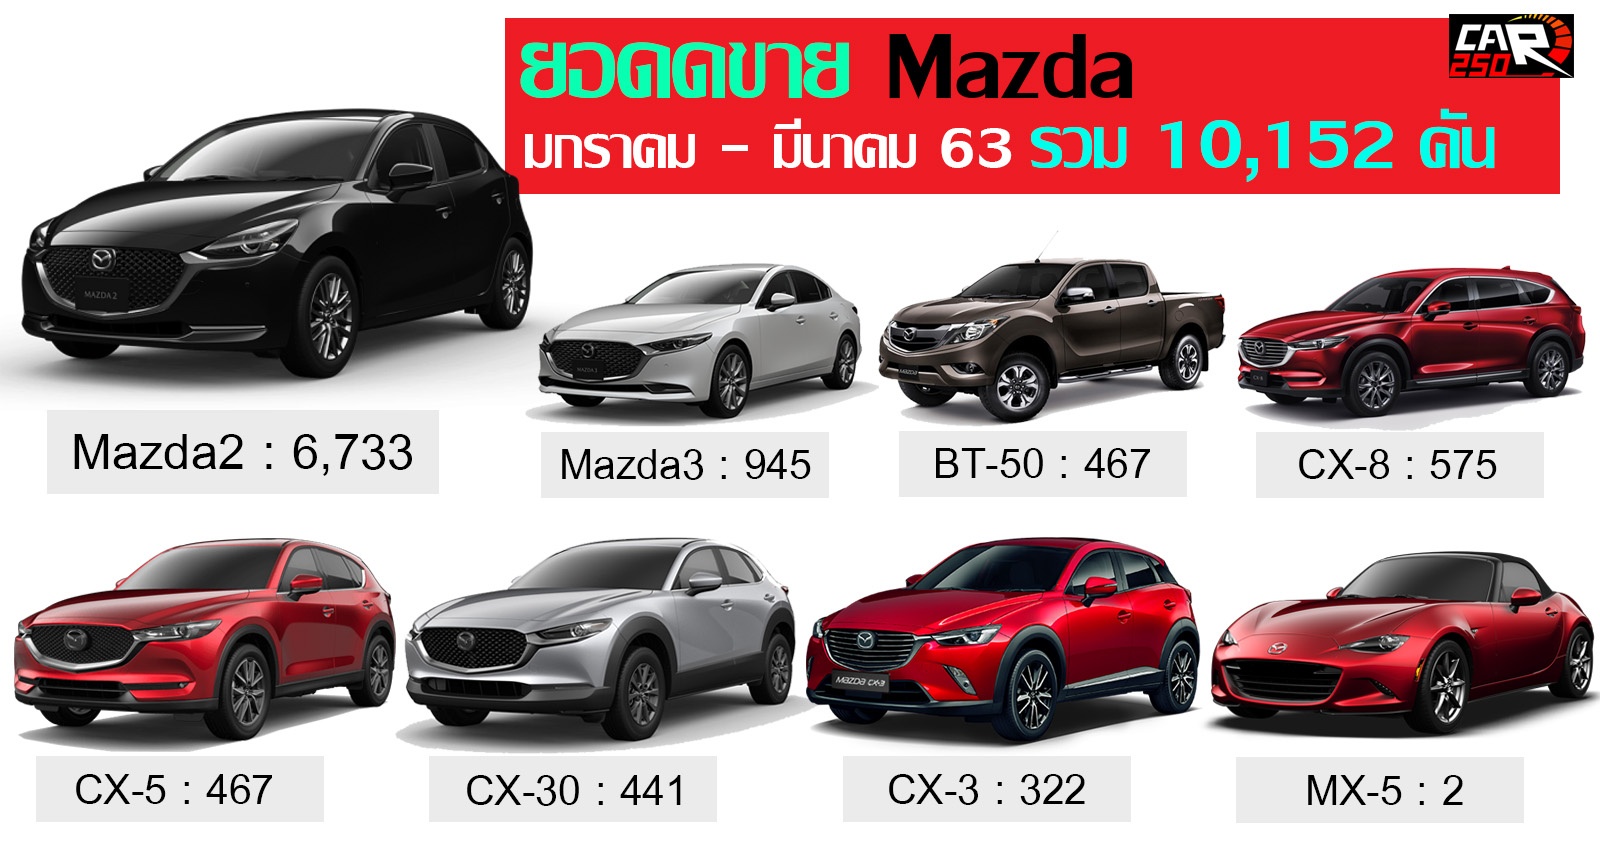 Mazda ประเทศไทย ปิดยอด ไตรมาสแรก 2563 รวม 10,152 คัน